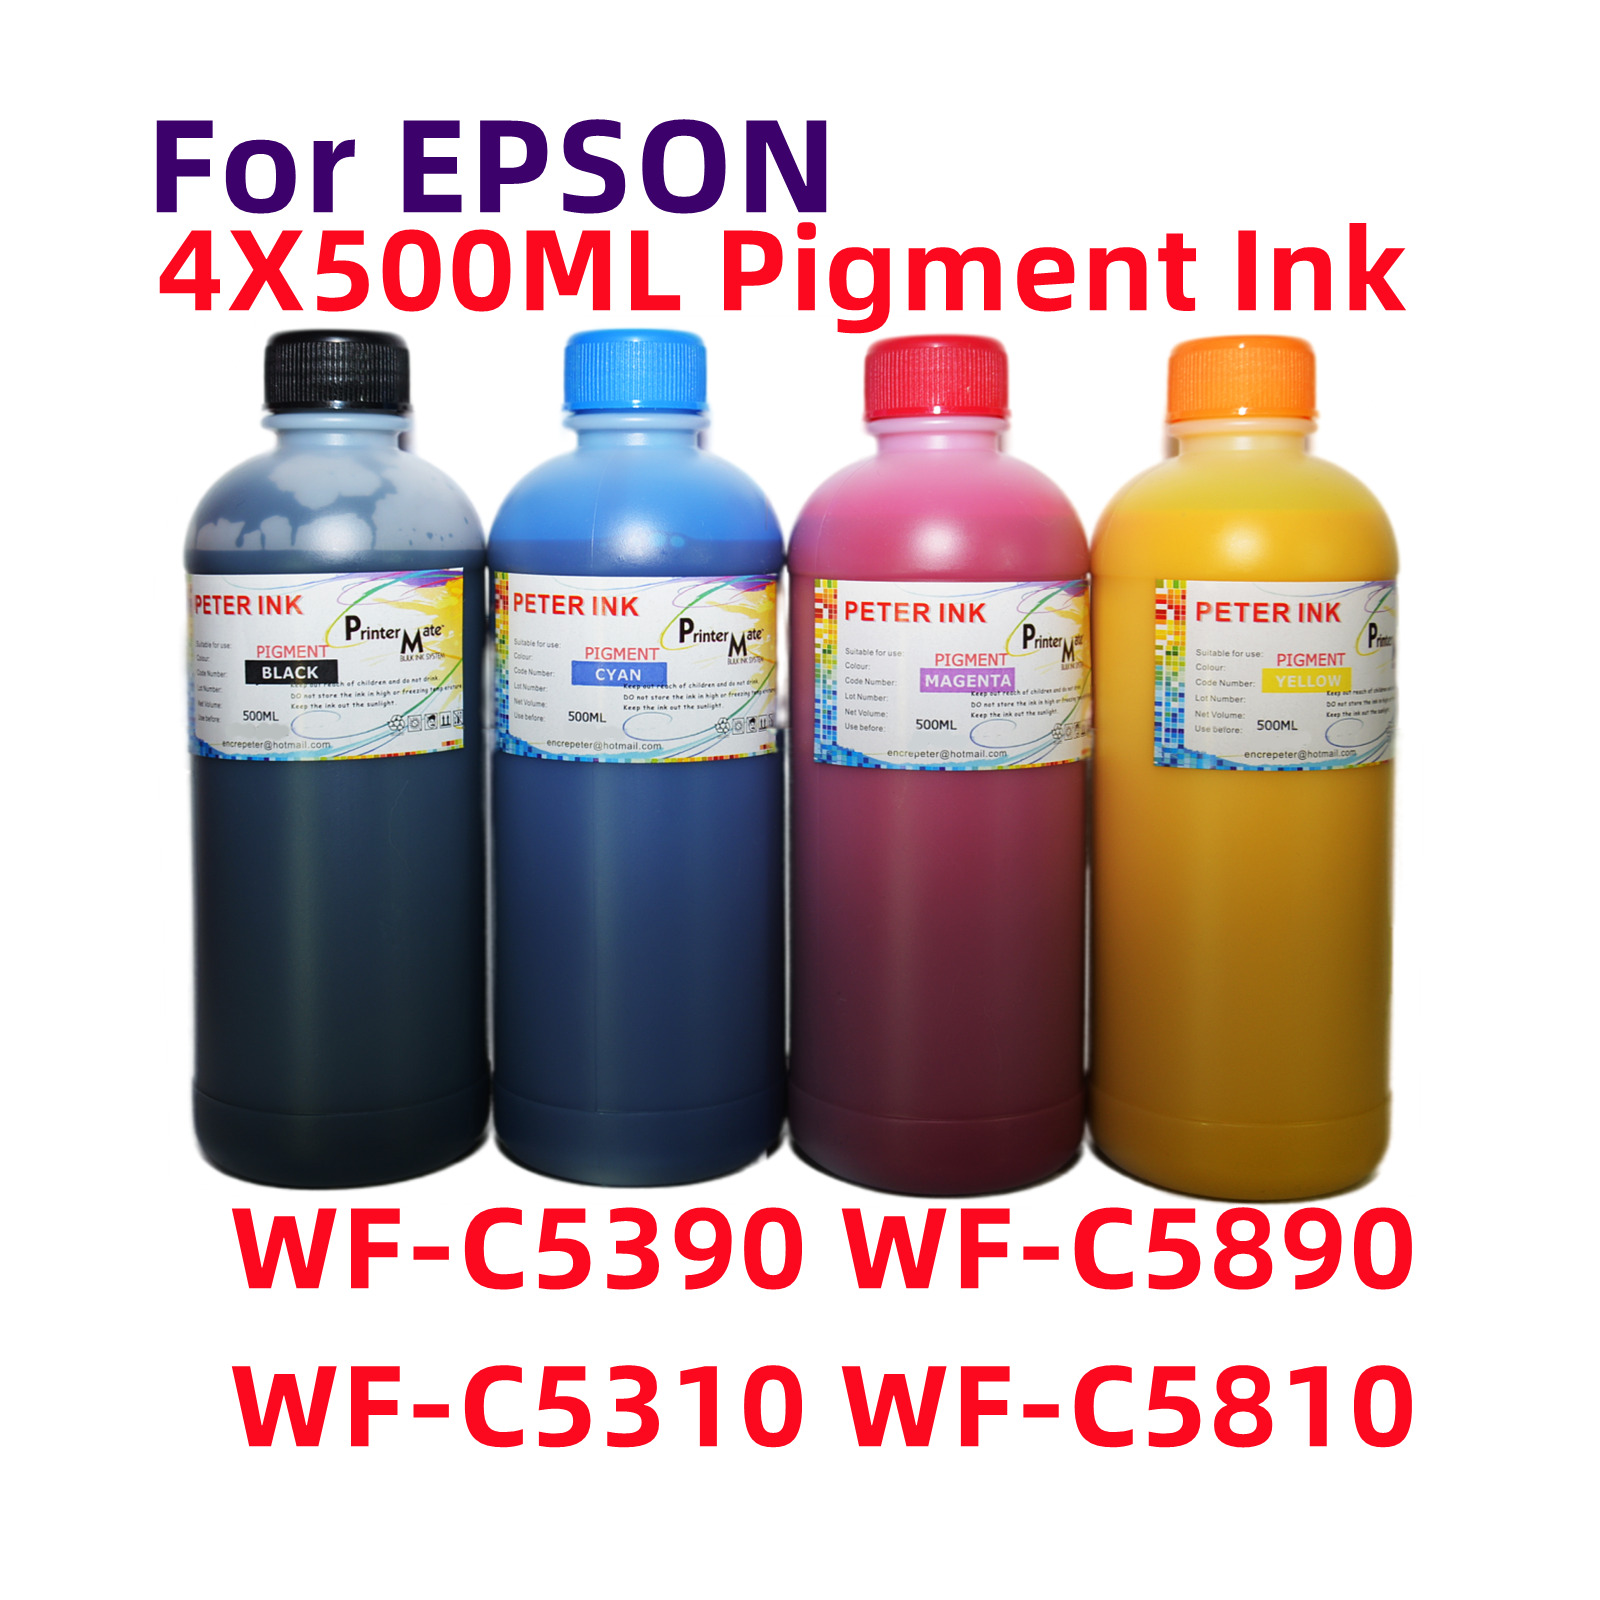 Premium Pigment ink for WF-C5390 WF-C5890 WF-C5310 WF-C5810 T10S T10W cartridge